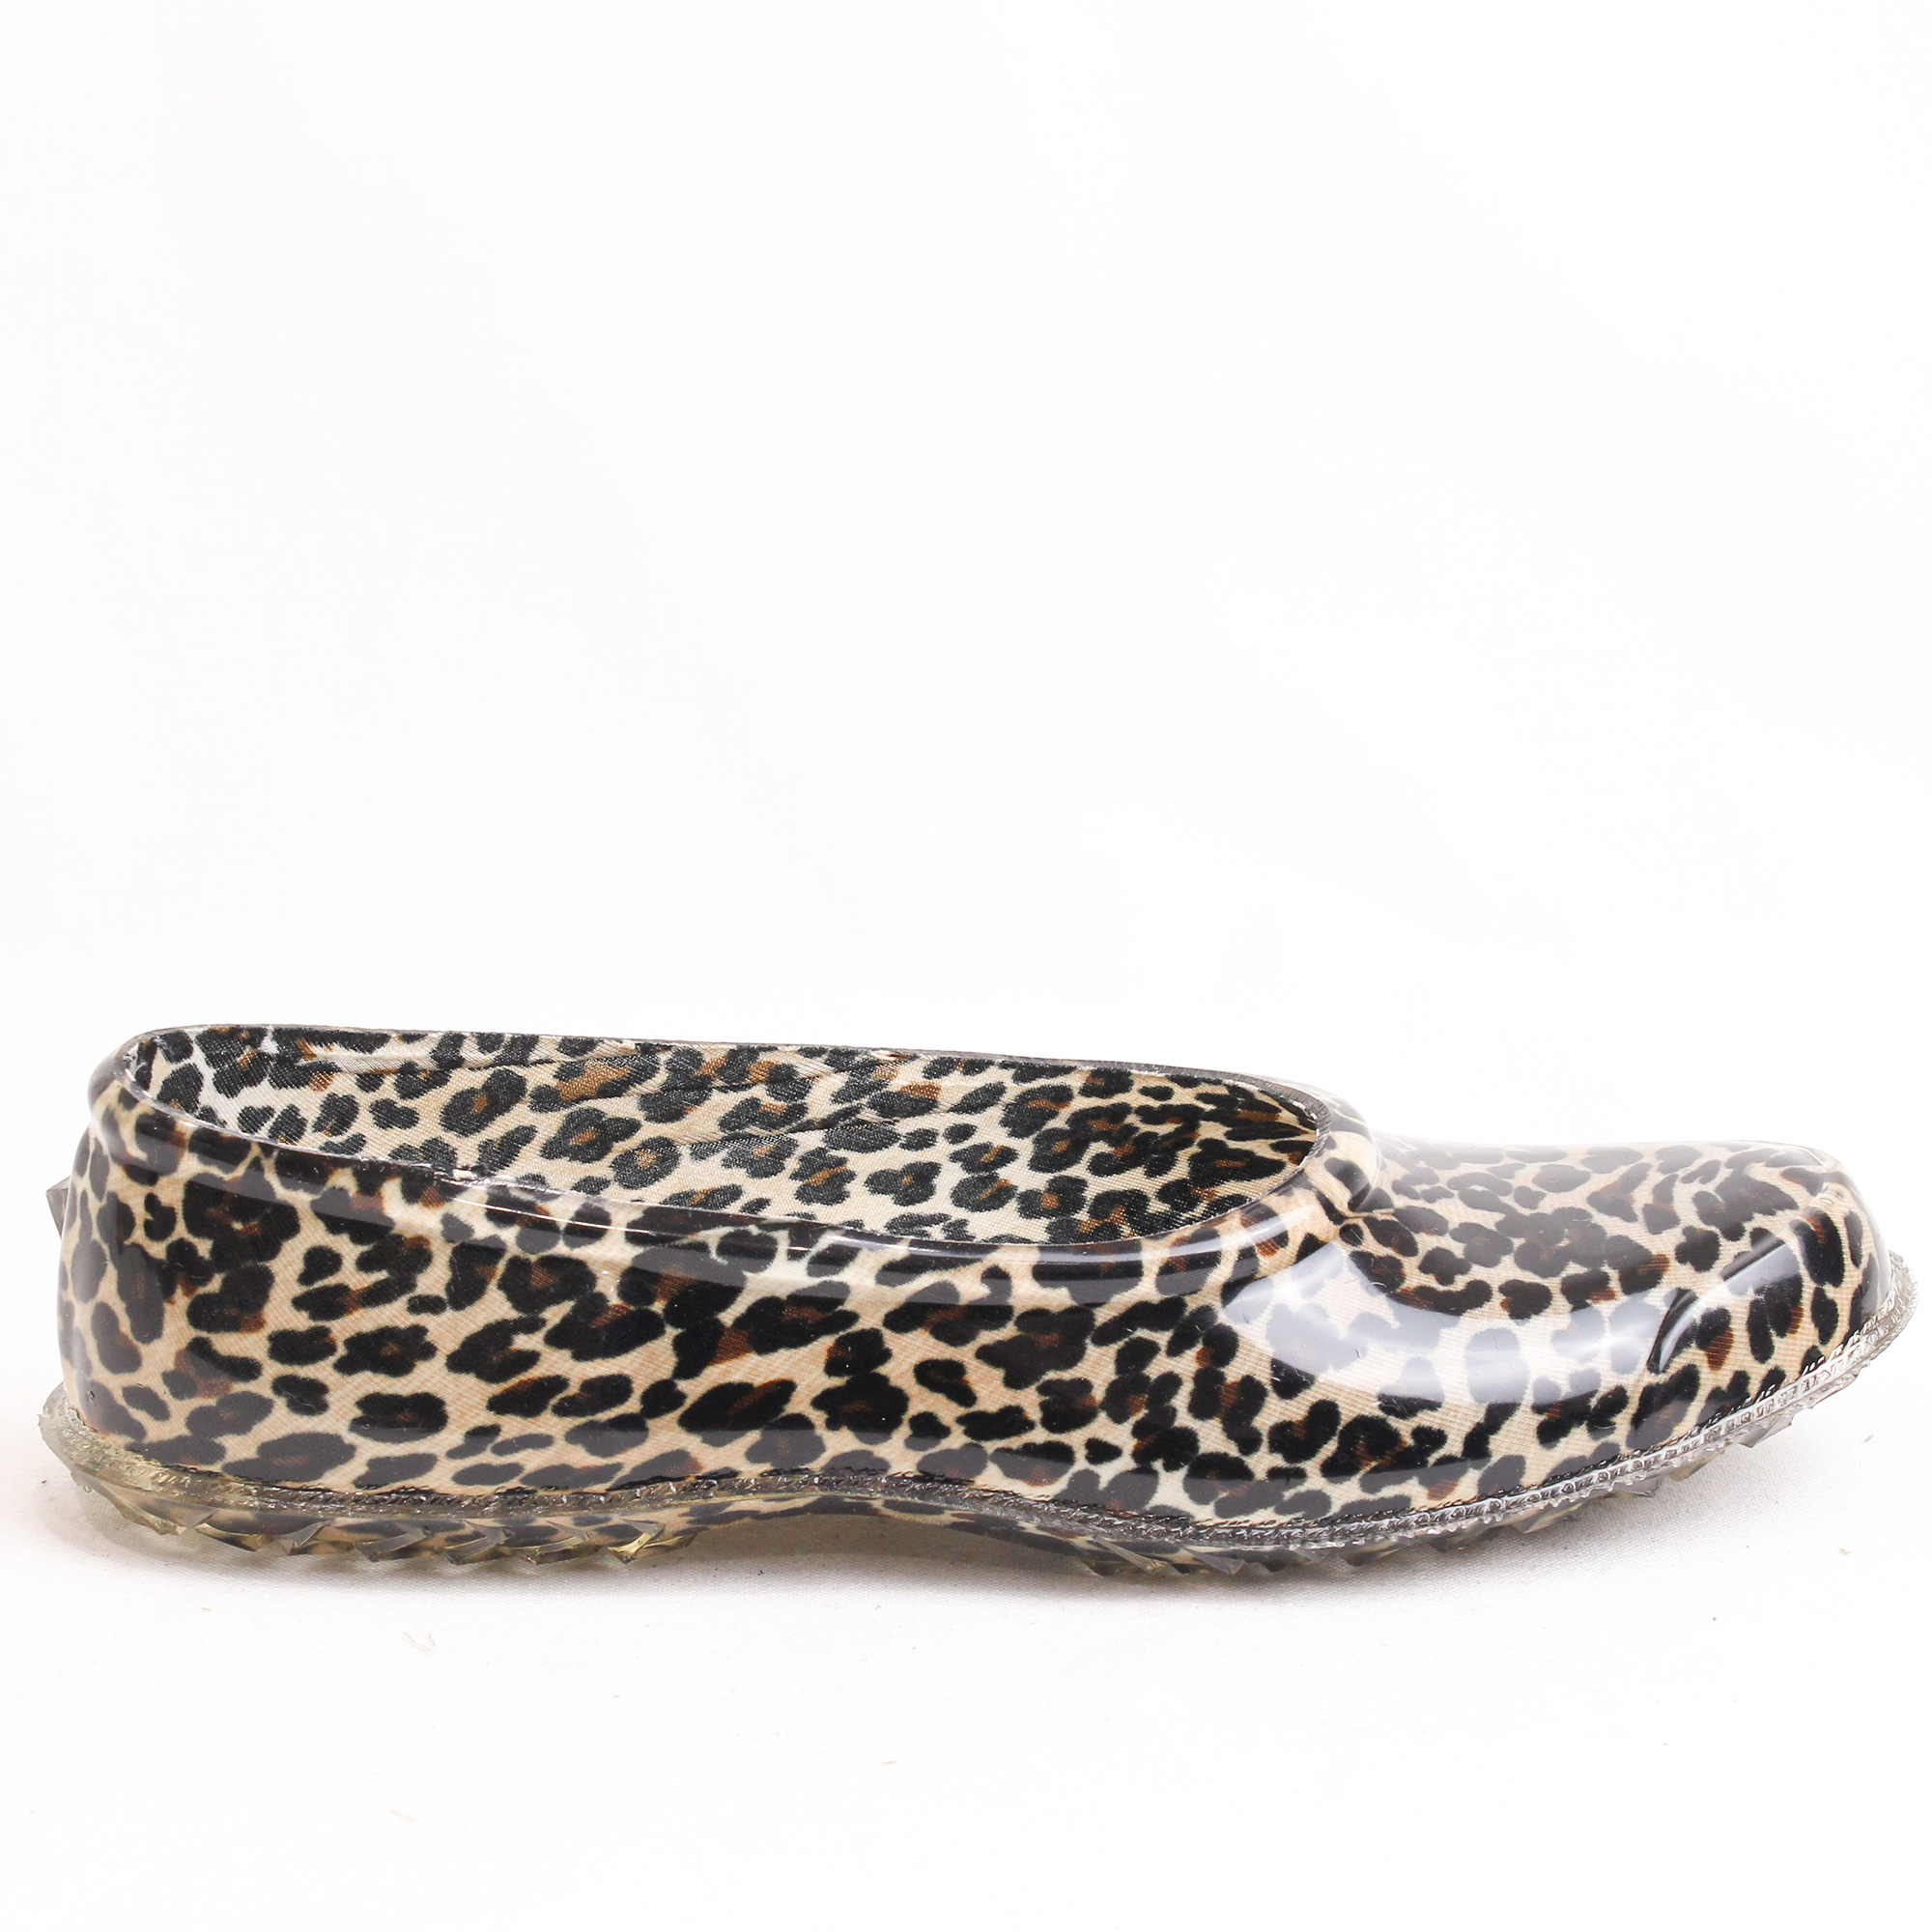 Arısan Leopar Desenli Şeffaf Plastik Ayakkabı